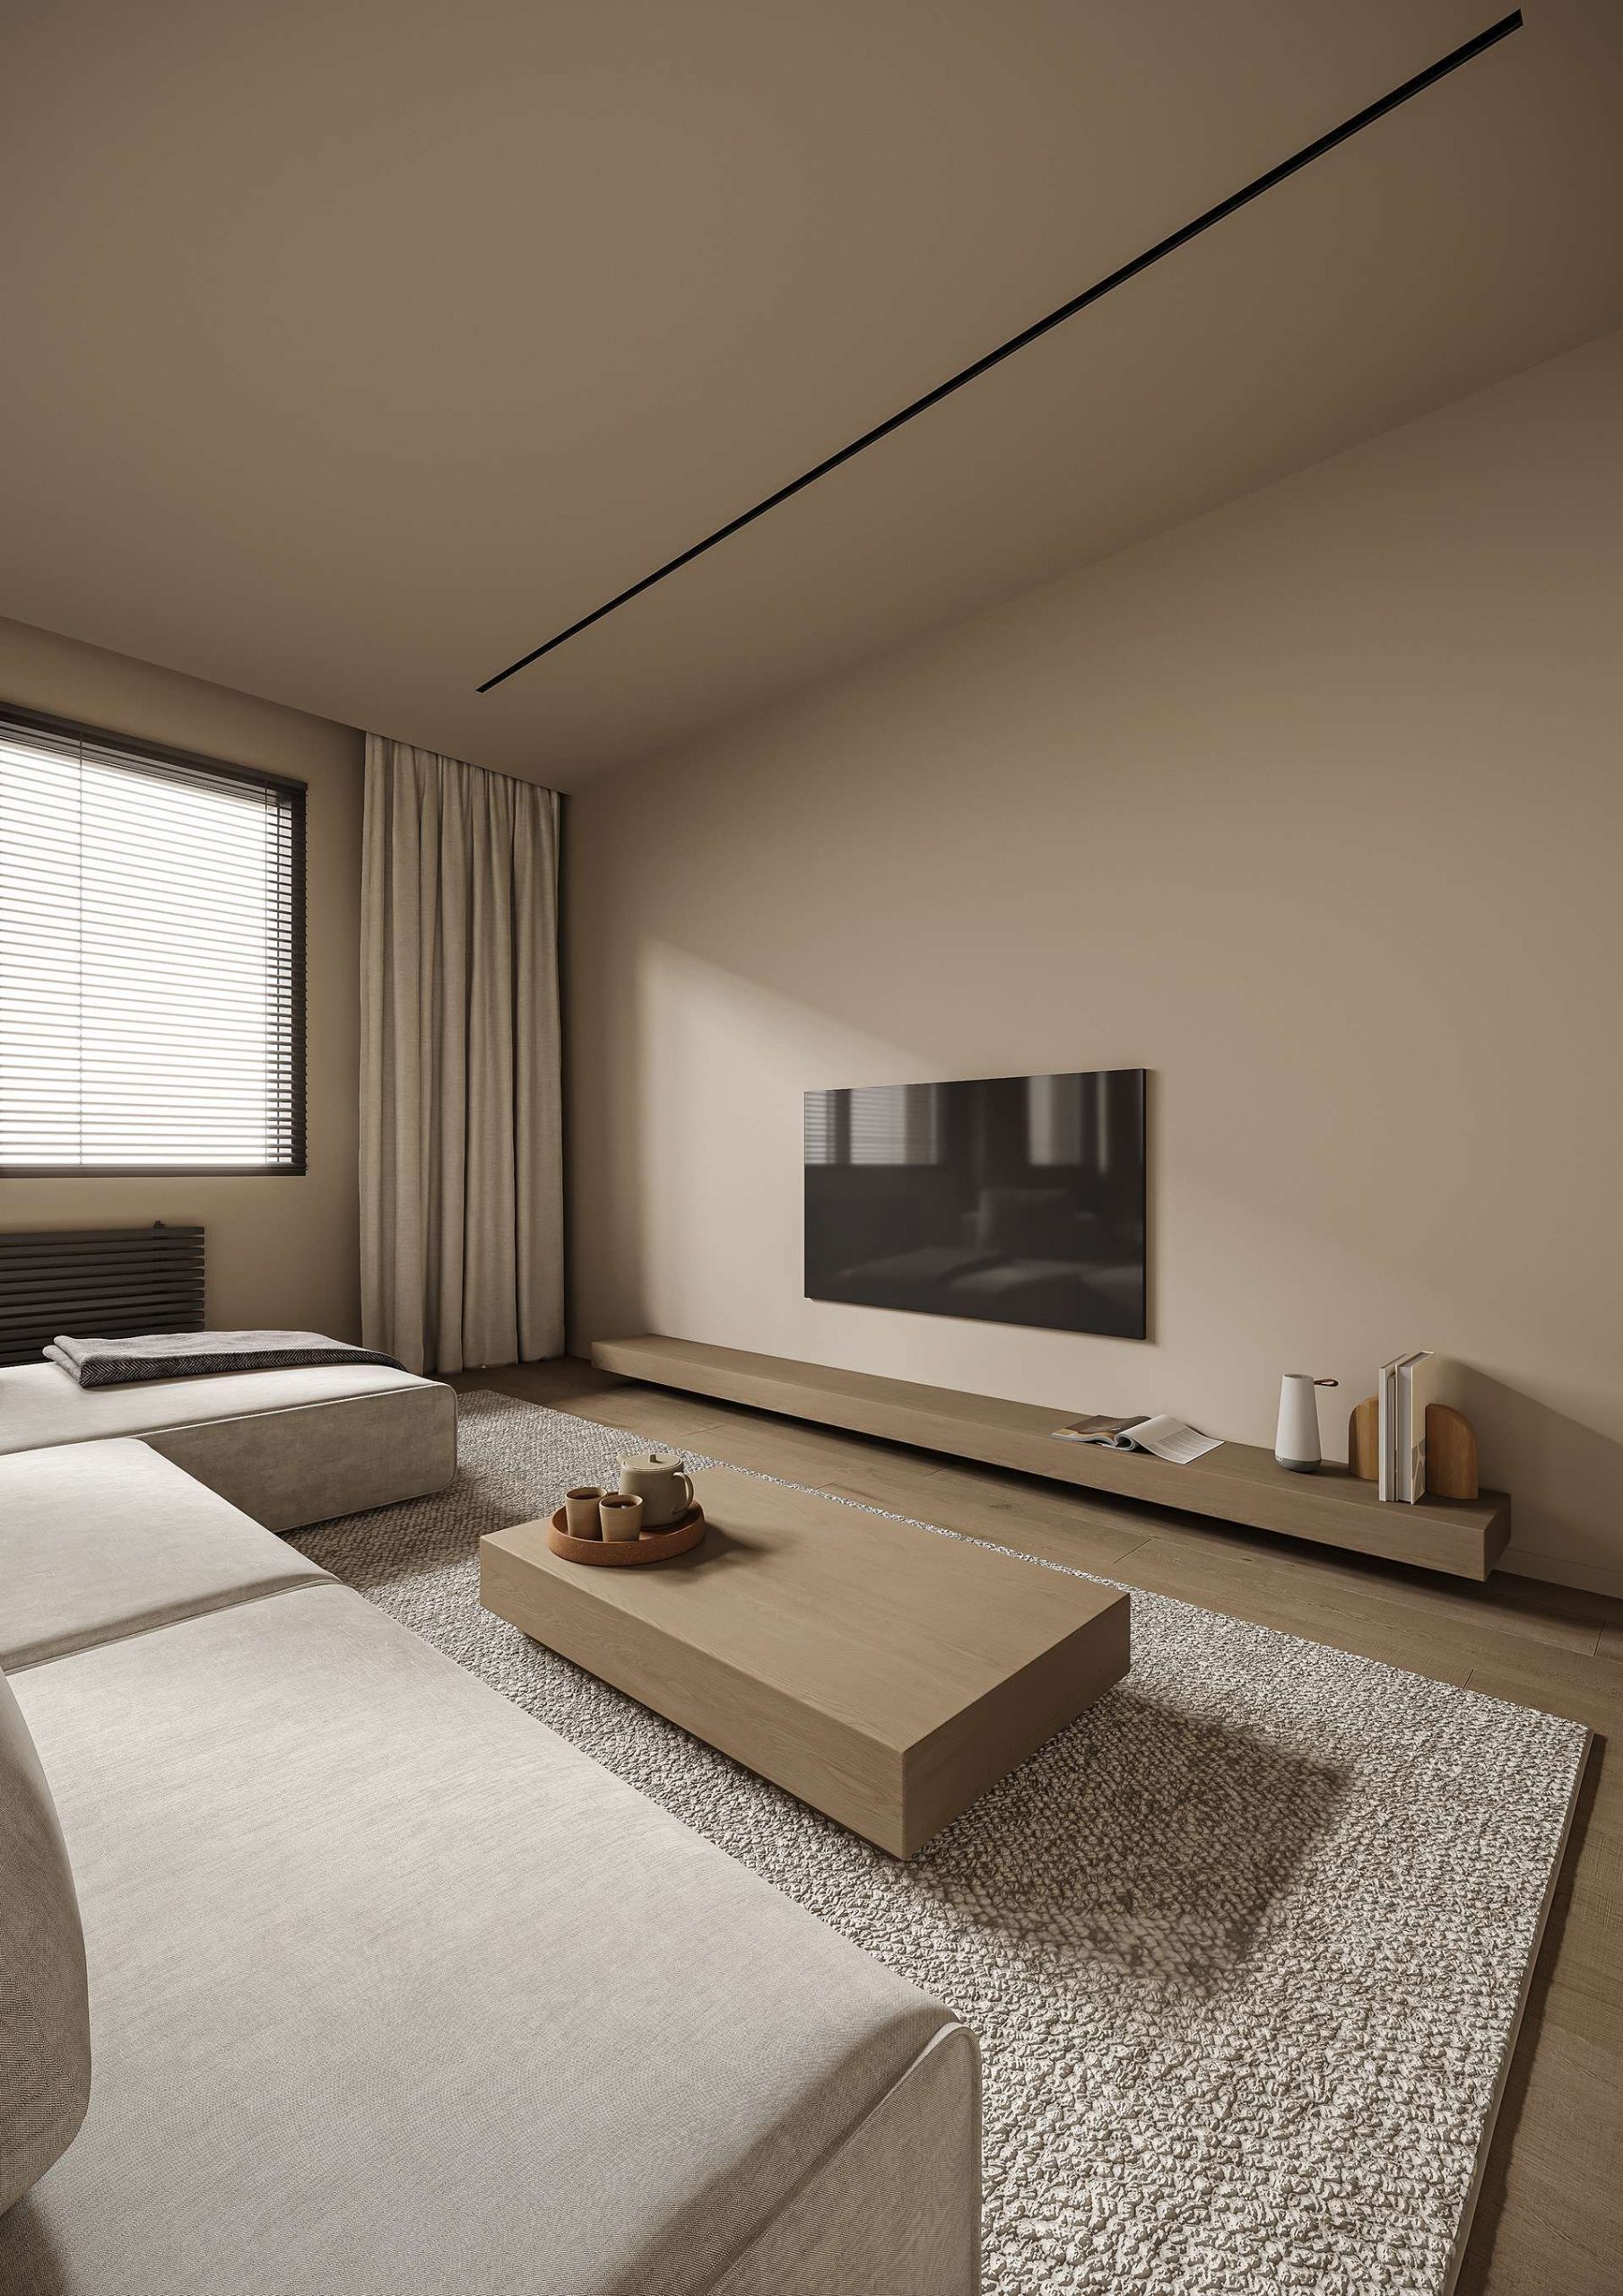 Tùy từng phong cách thiết kế mà bố trí nội thất phù hợp sẽ giúp không gian hài hòa và tiện nghi hơn